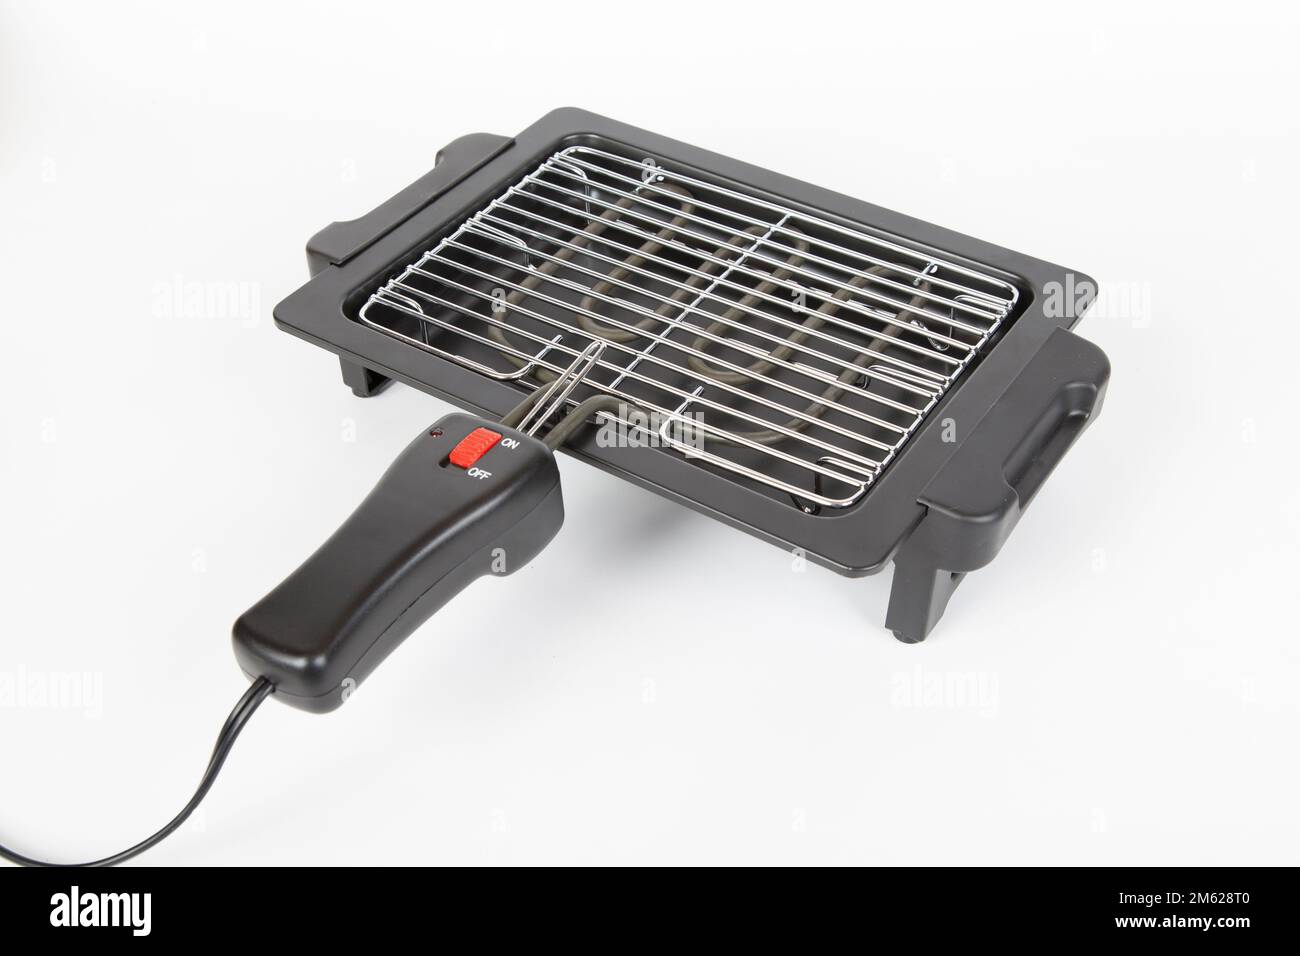 Griglia elettrica per cucinare il cibo Foto stock - Alamy